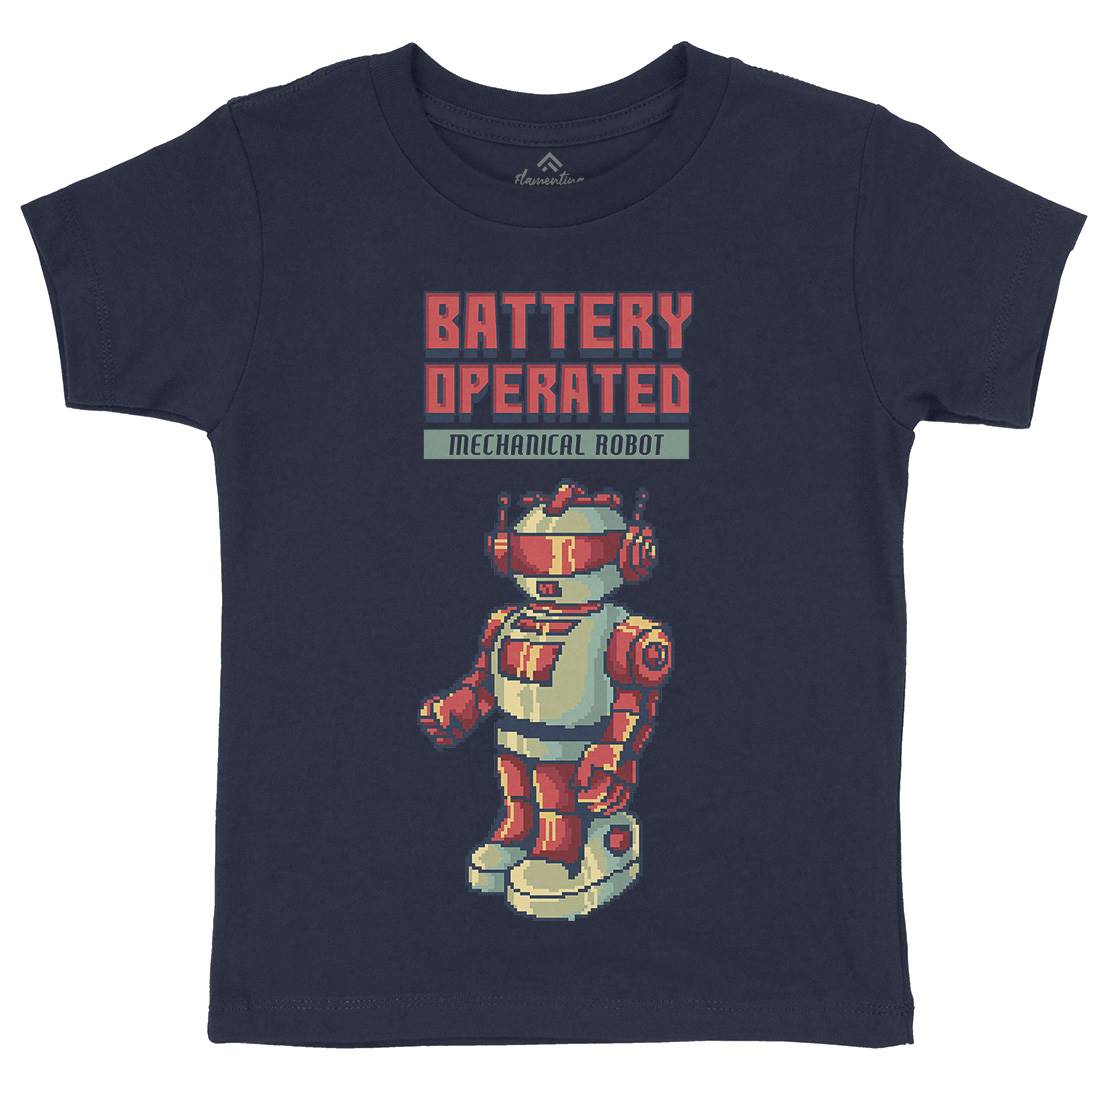 Vintages Robot Kids Crew Neck T-Shirt Retro B977